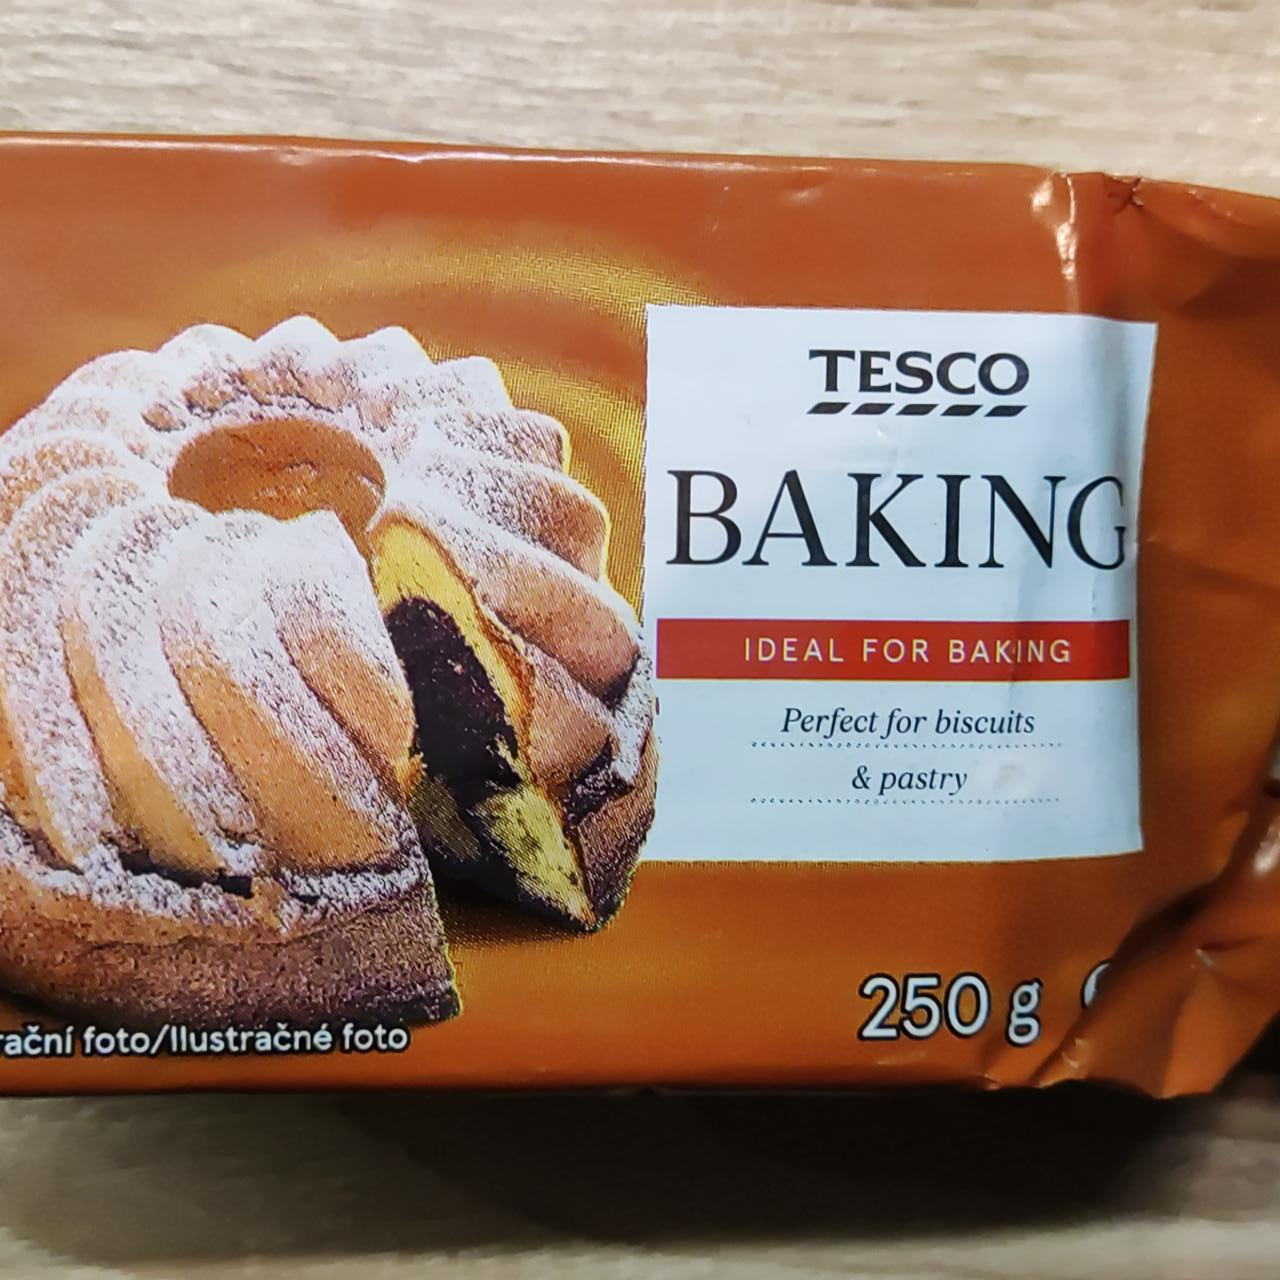 Fotografie - Baking ideal for baking Tesco